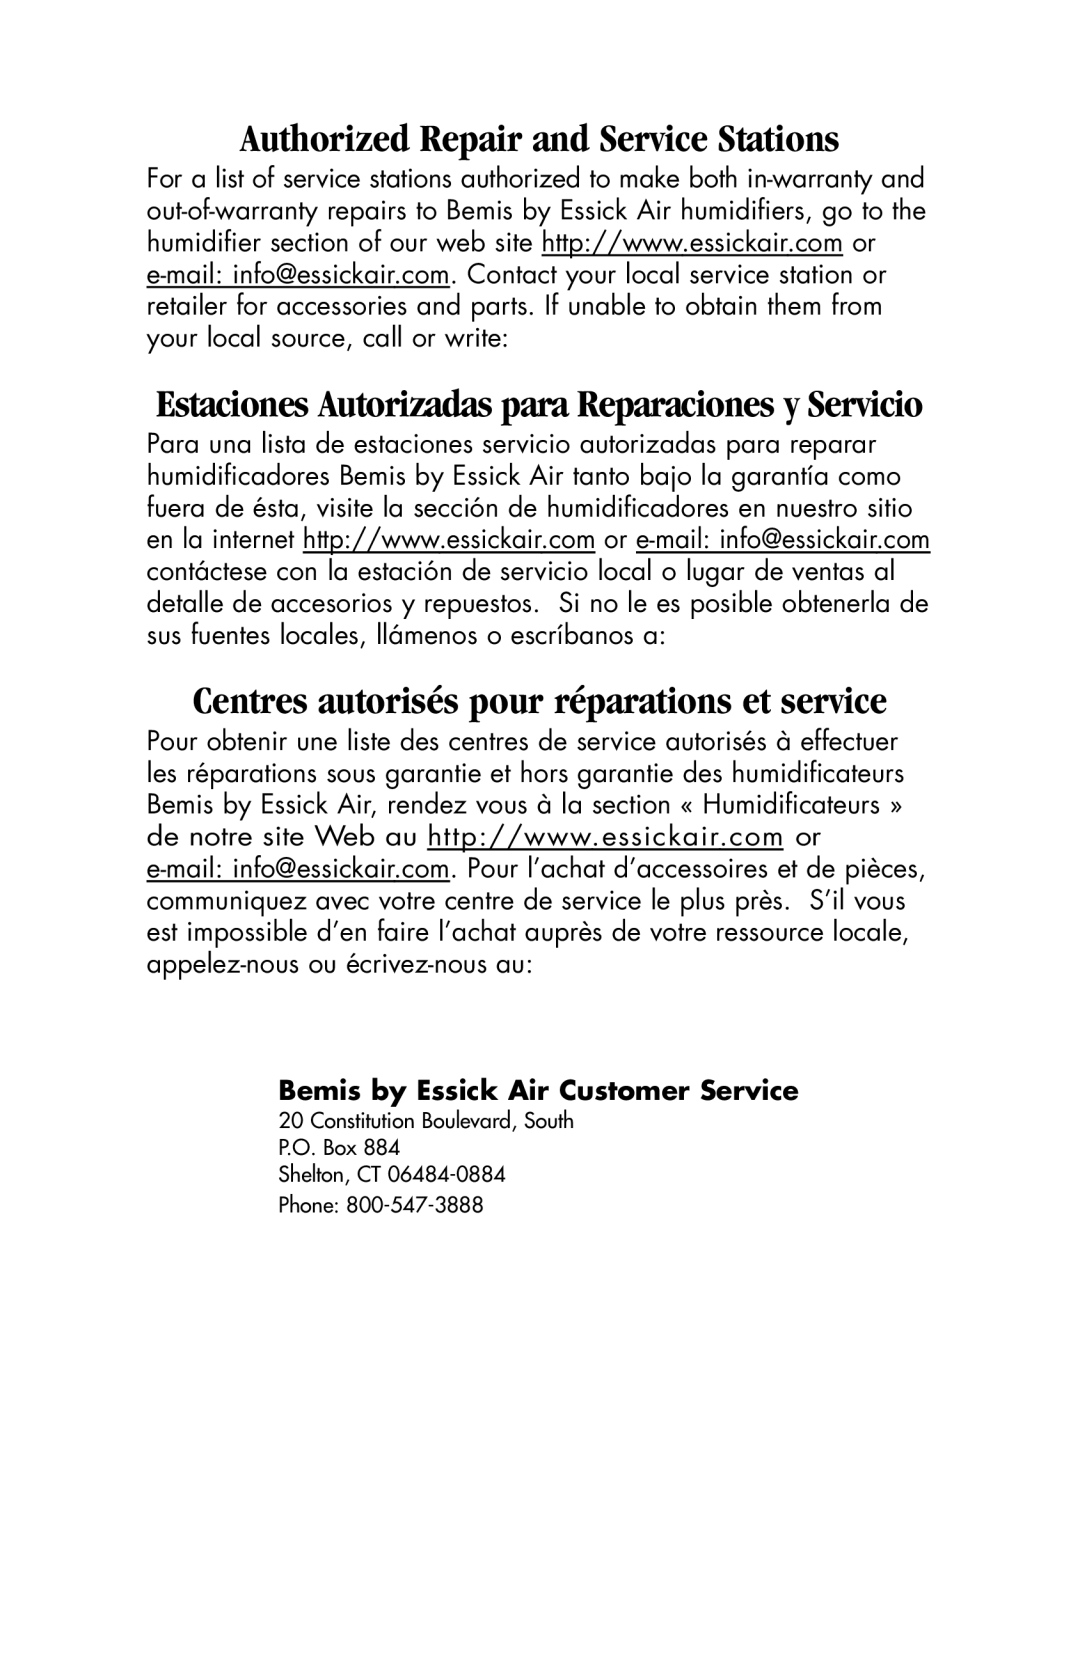 Essick Air 127-001 manual Authorized Repair and Service Stations, Centres autorisés pour réparations et service 